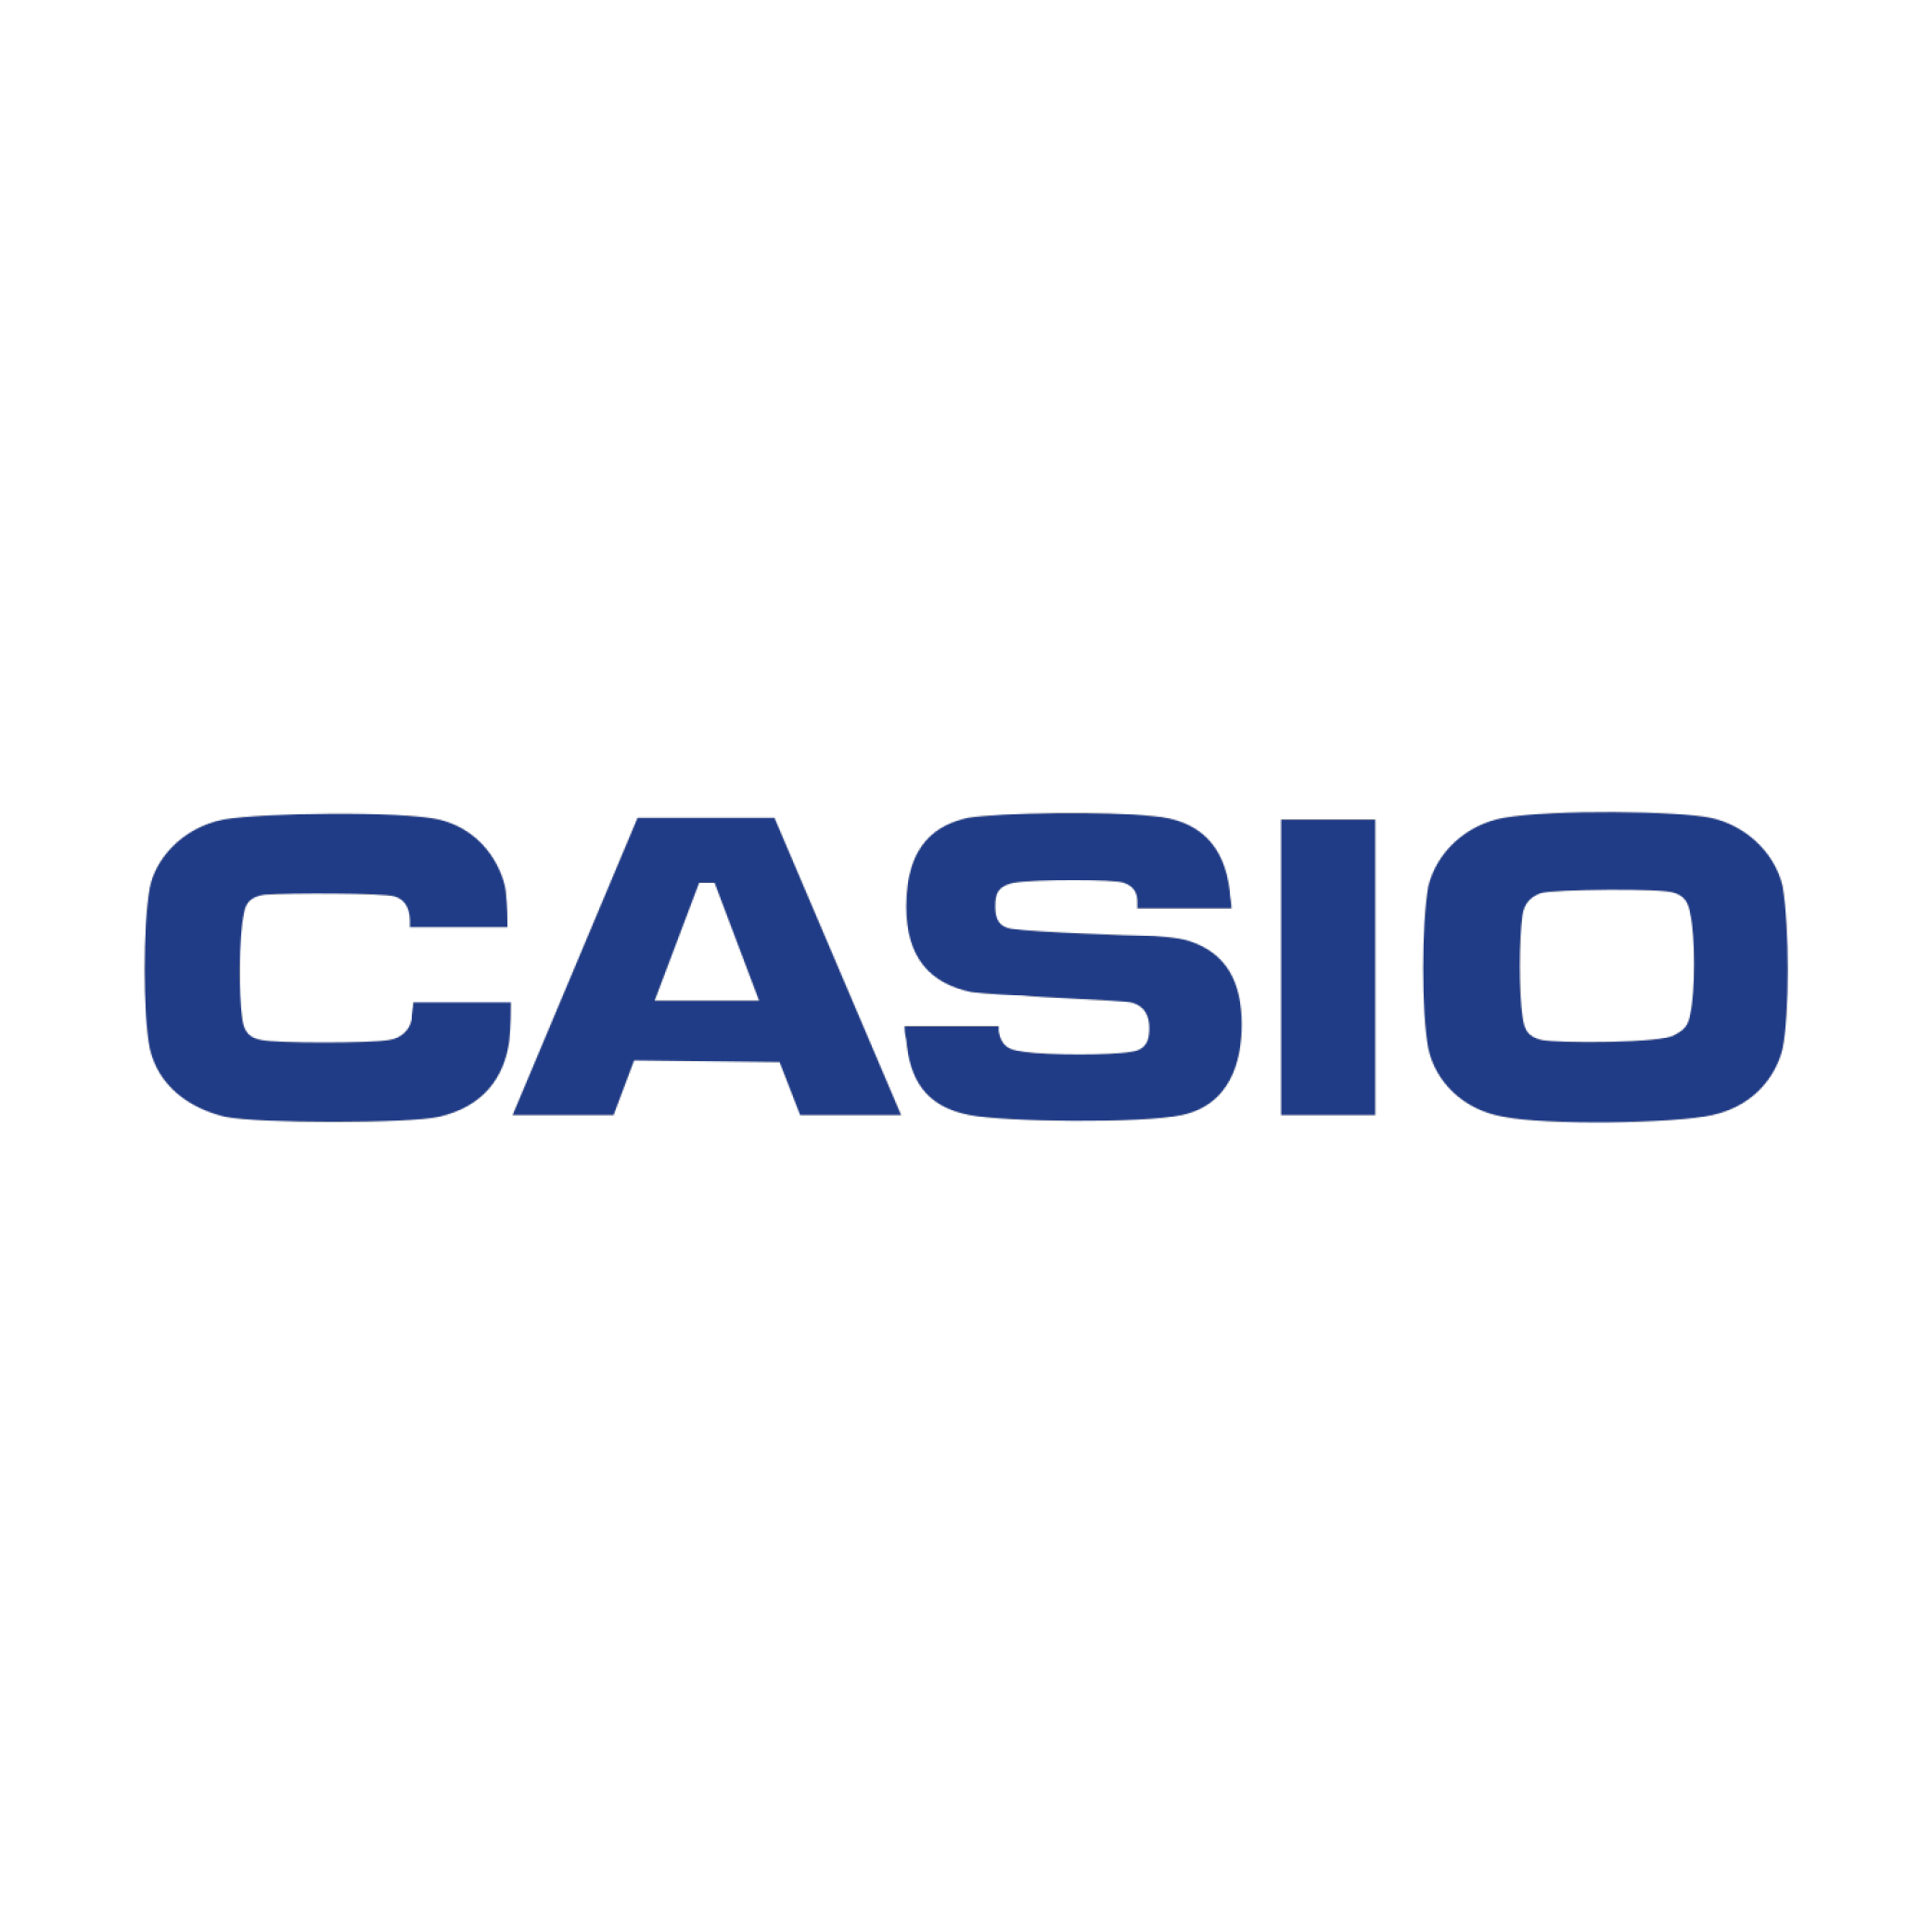 Casio à l'imprimerie du Potier dans le 93